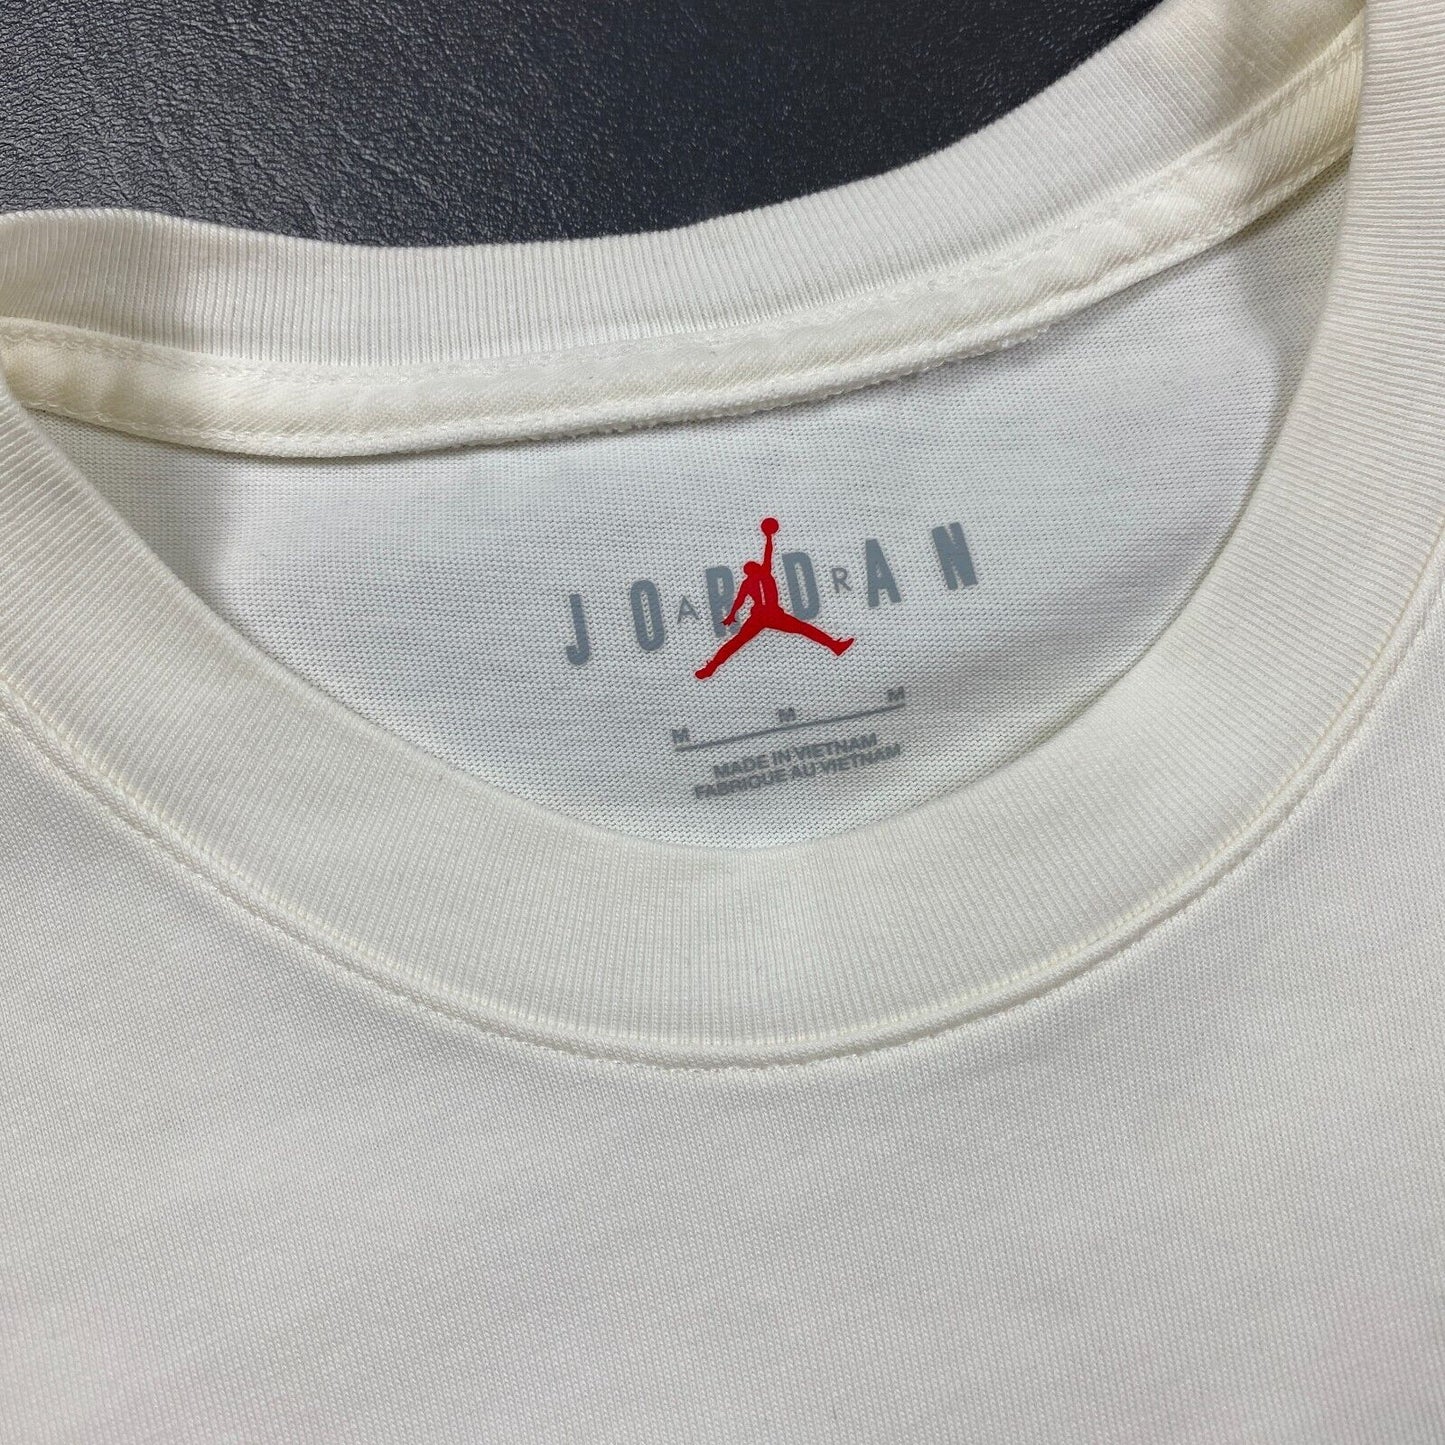 100% Authentic Michael Jordan x Fragment Cactus Jack Travis Scott Tshirt Size M